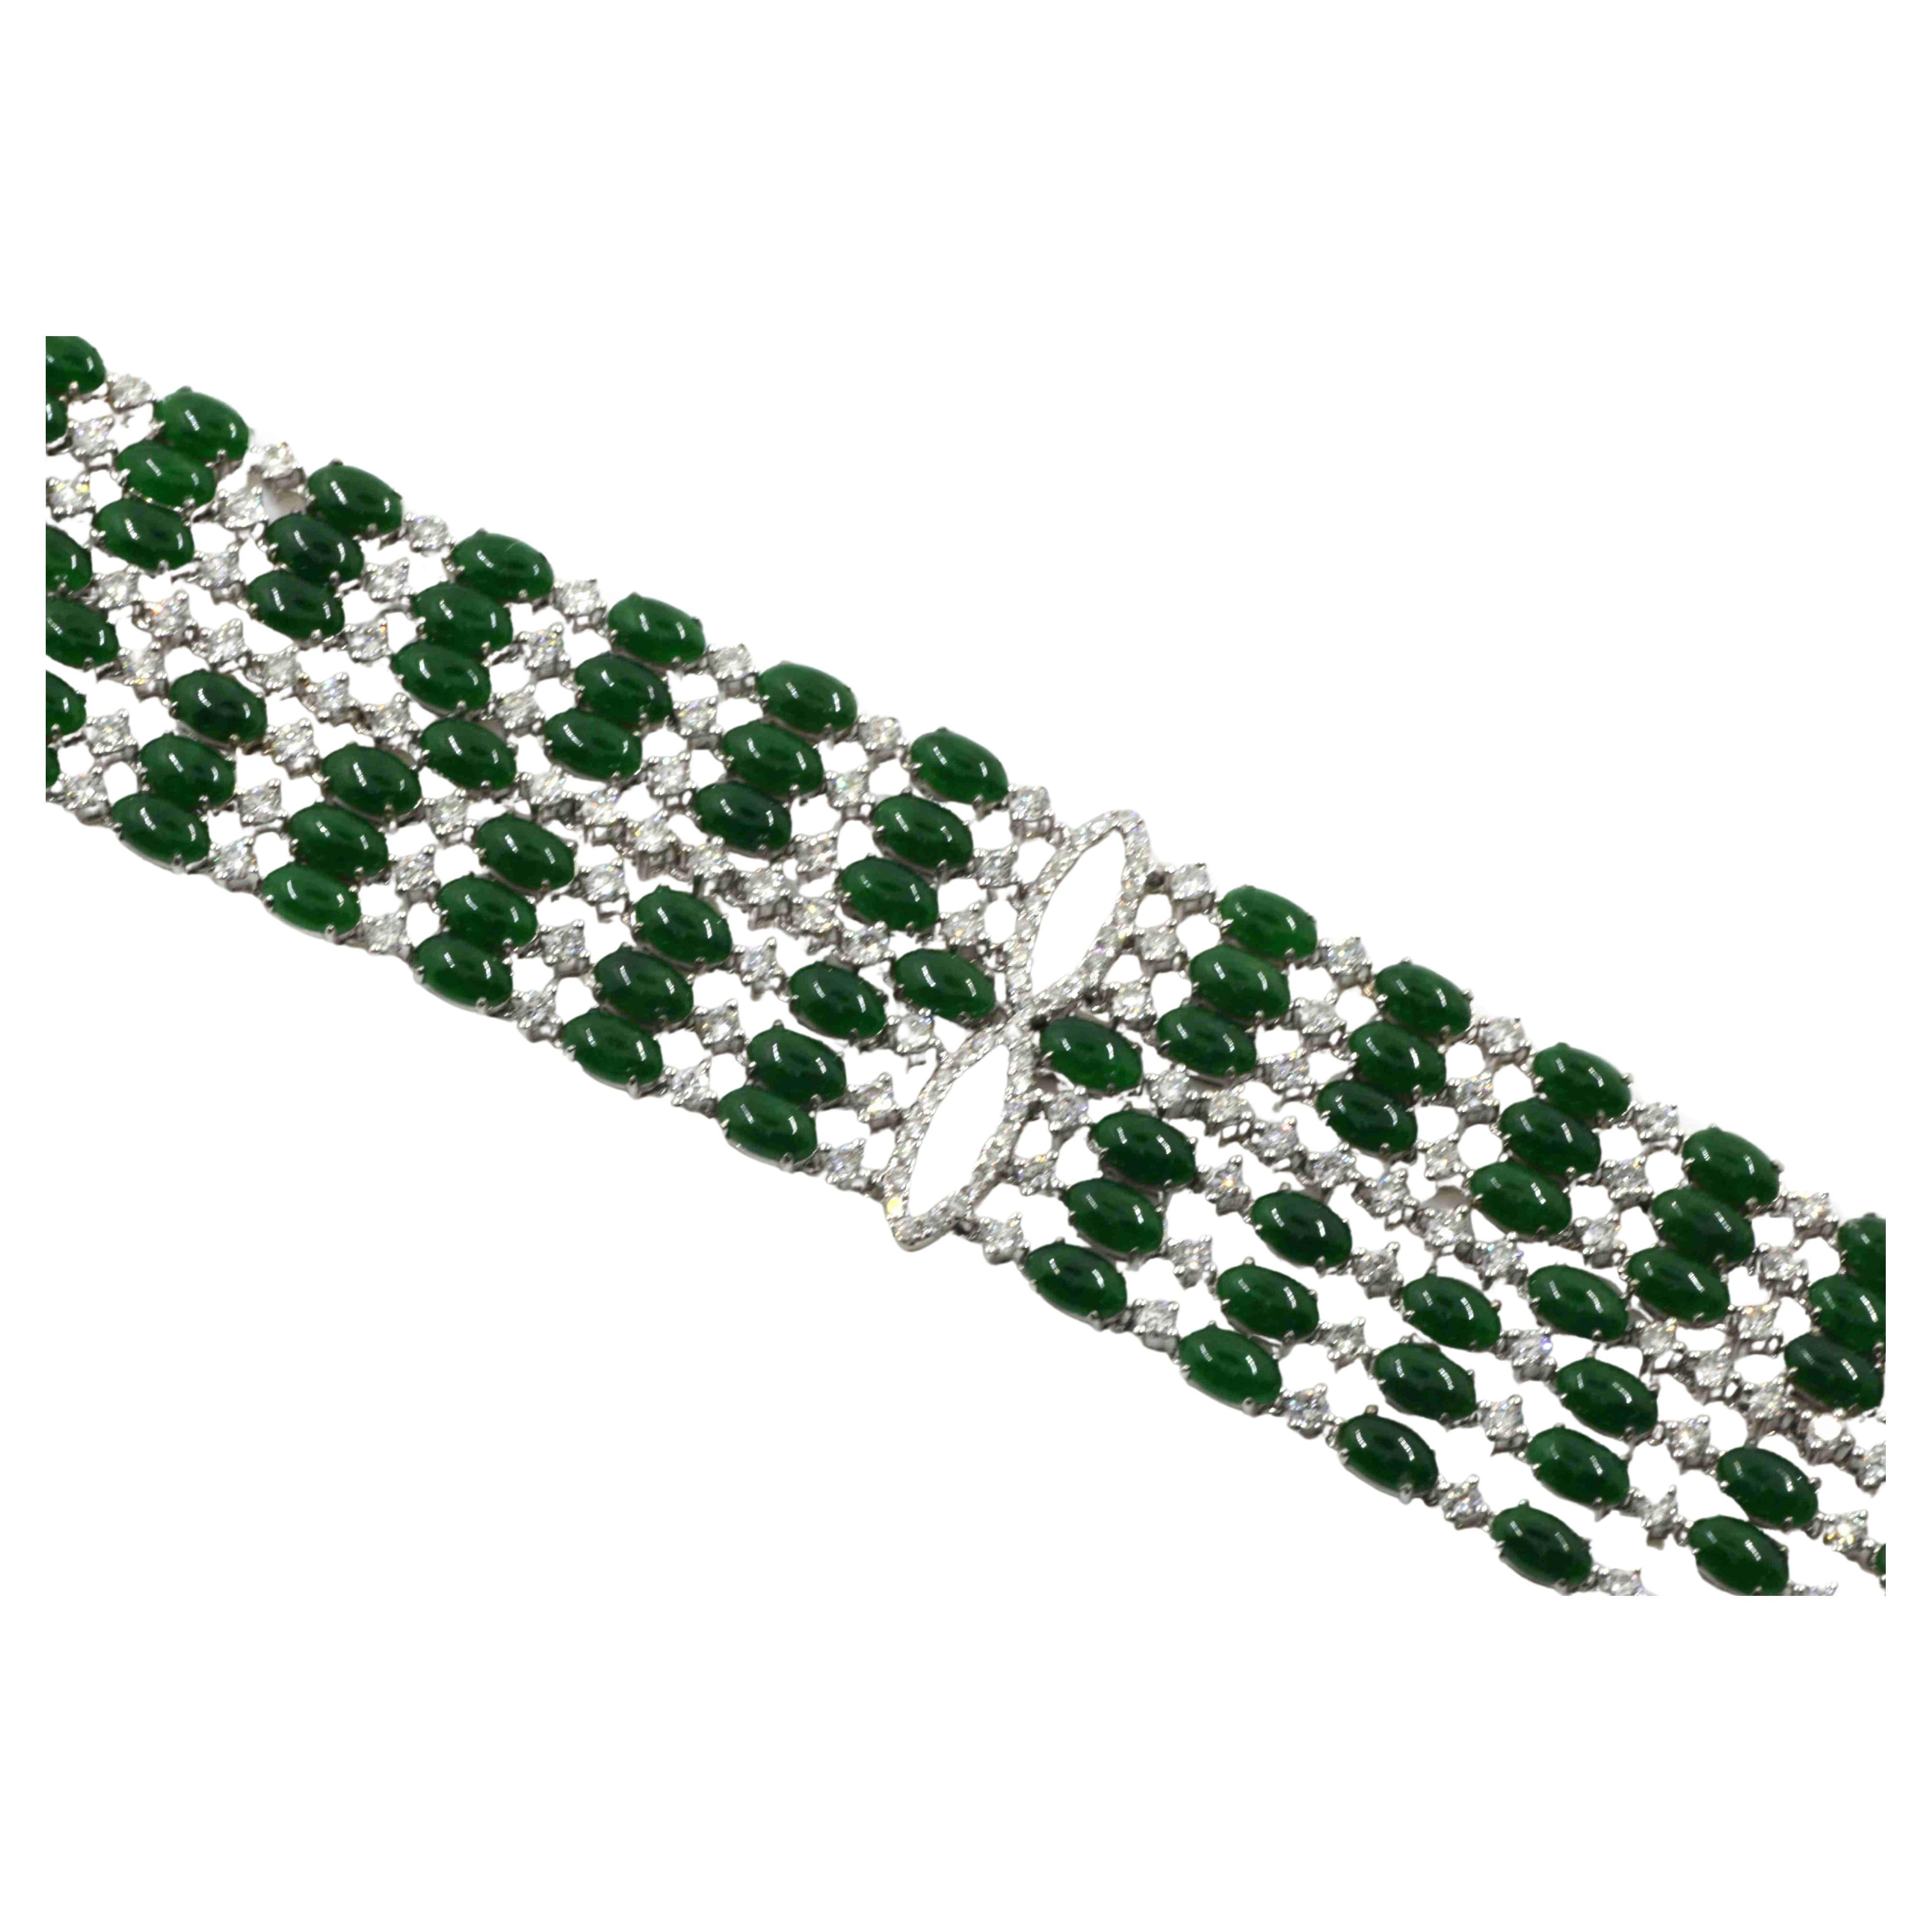 Ce bracelet est un bijou époustouflant, une combinaison éblouissante d'élégance classique et de luxe moderne. Le bracelet est réalisé de manière experte en or blanc 18 carats, qui offre une toile de fond élégante et sophistiquée aux pierres